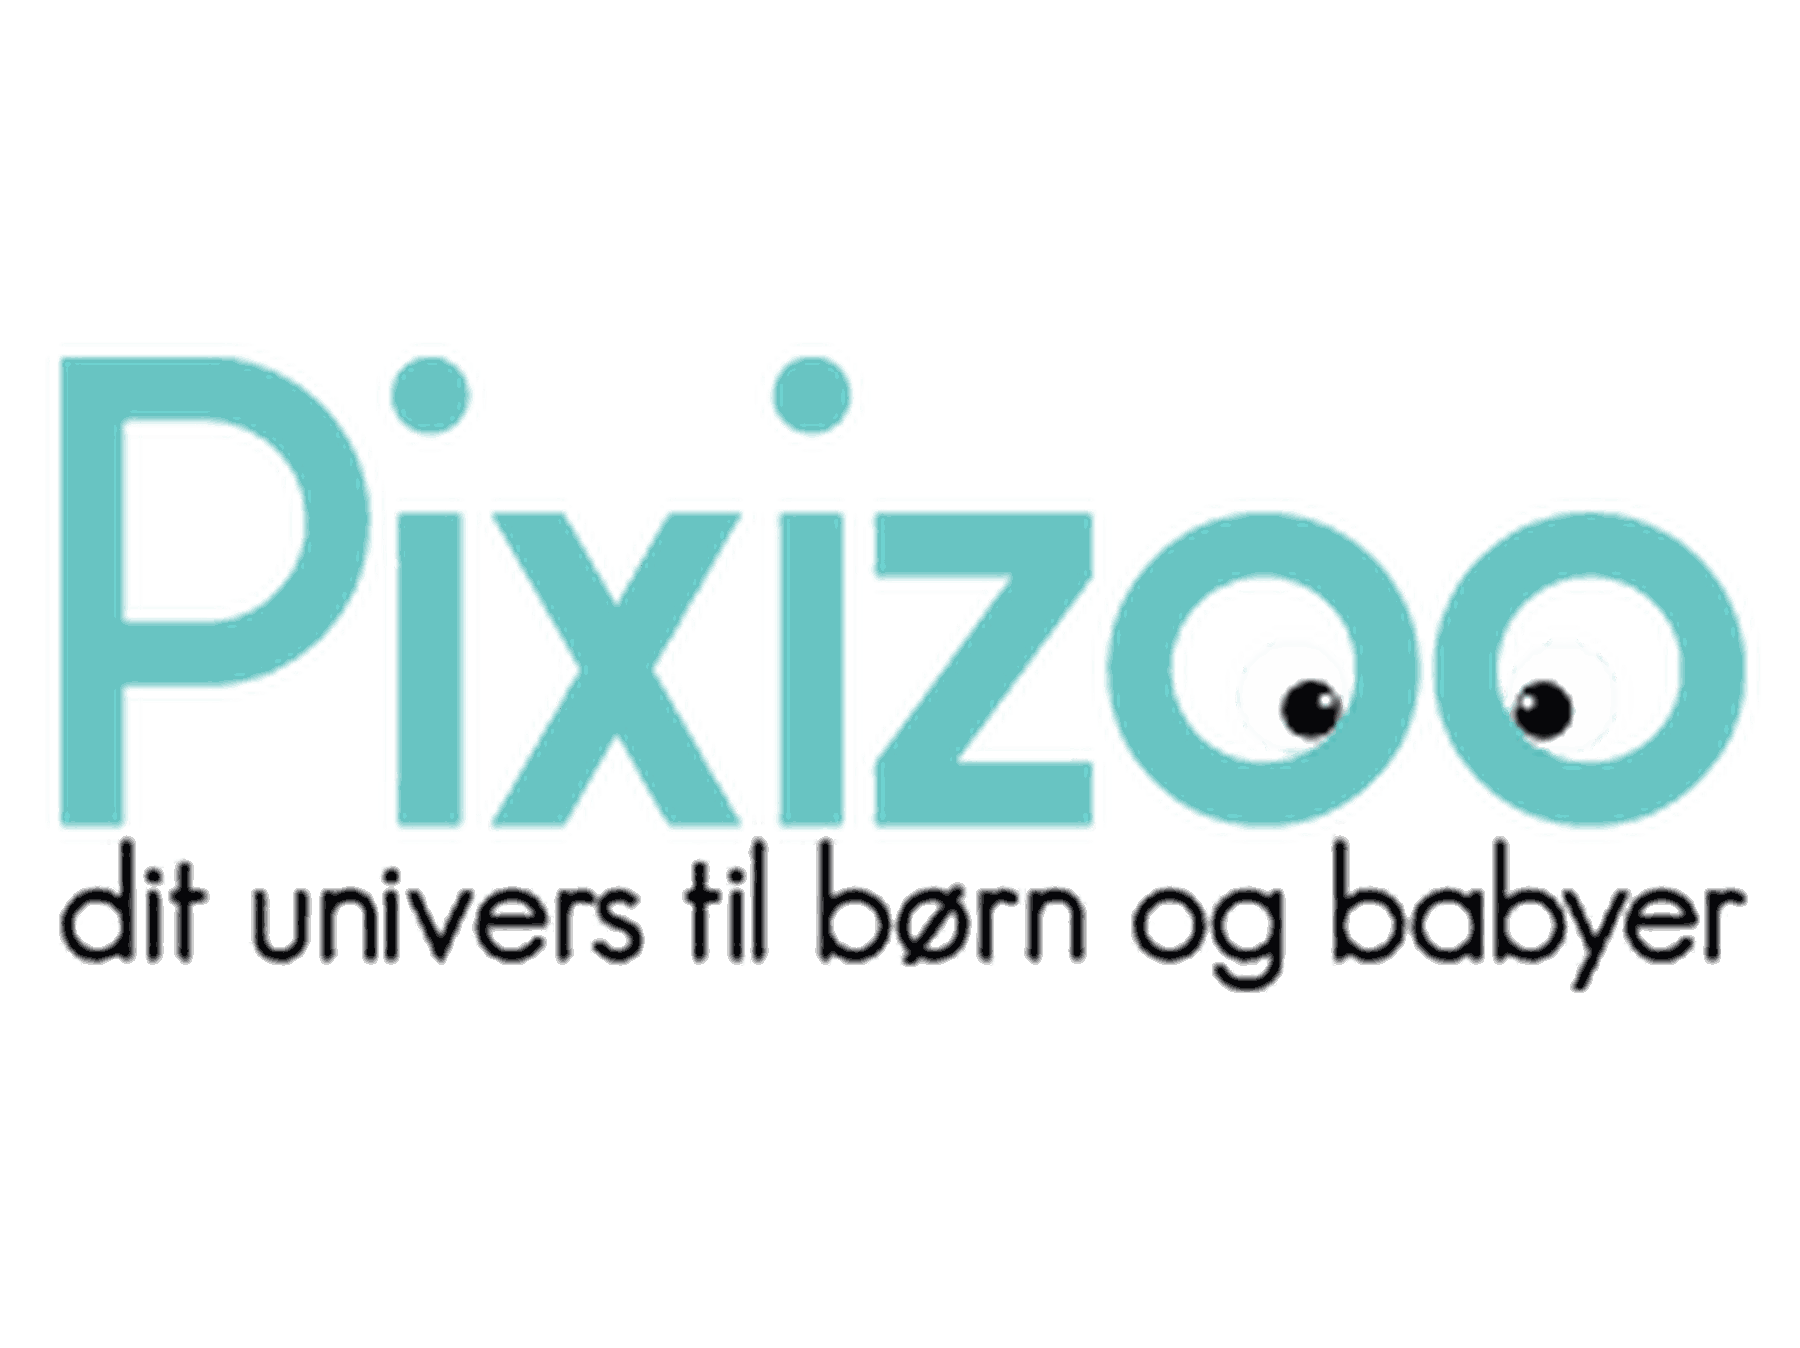 Pixizoo